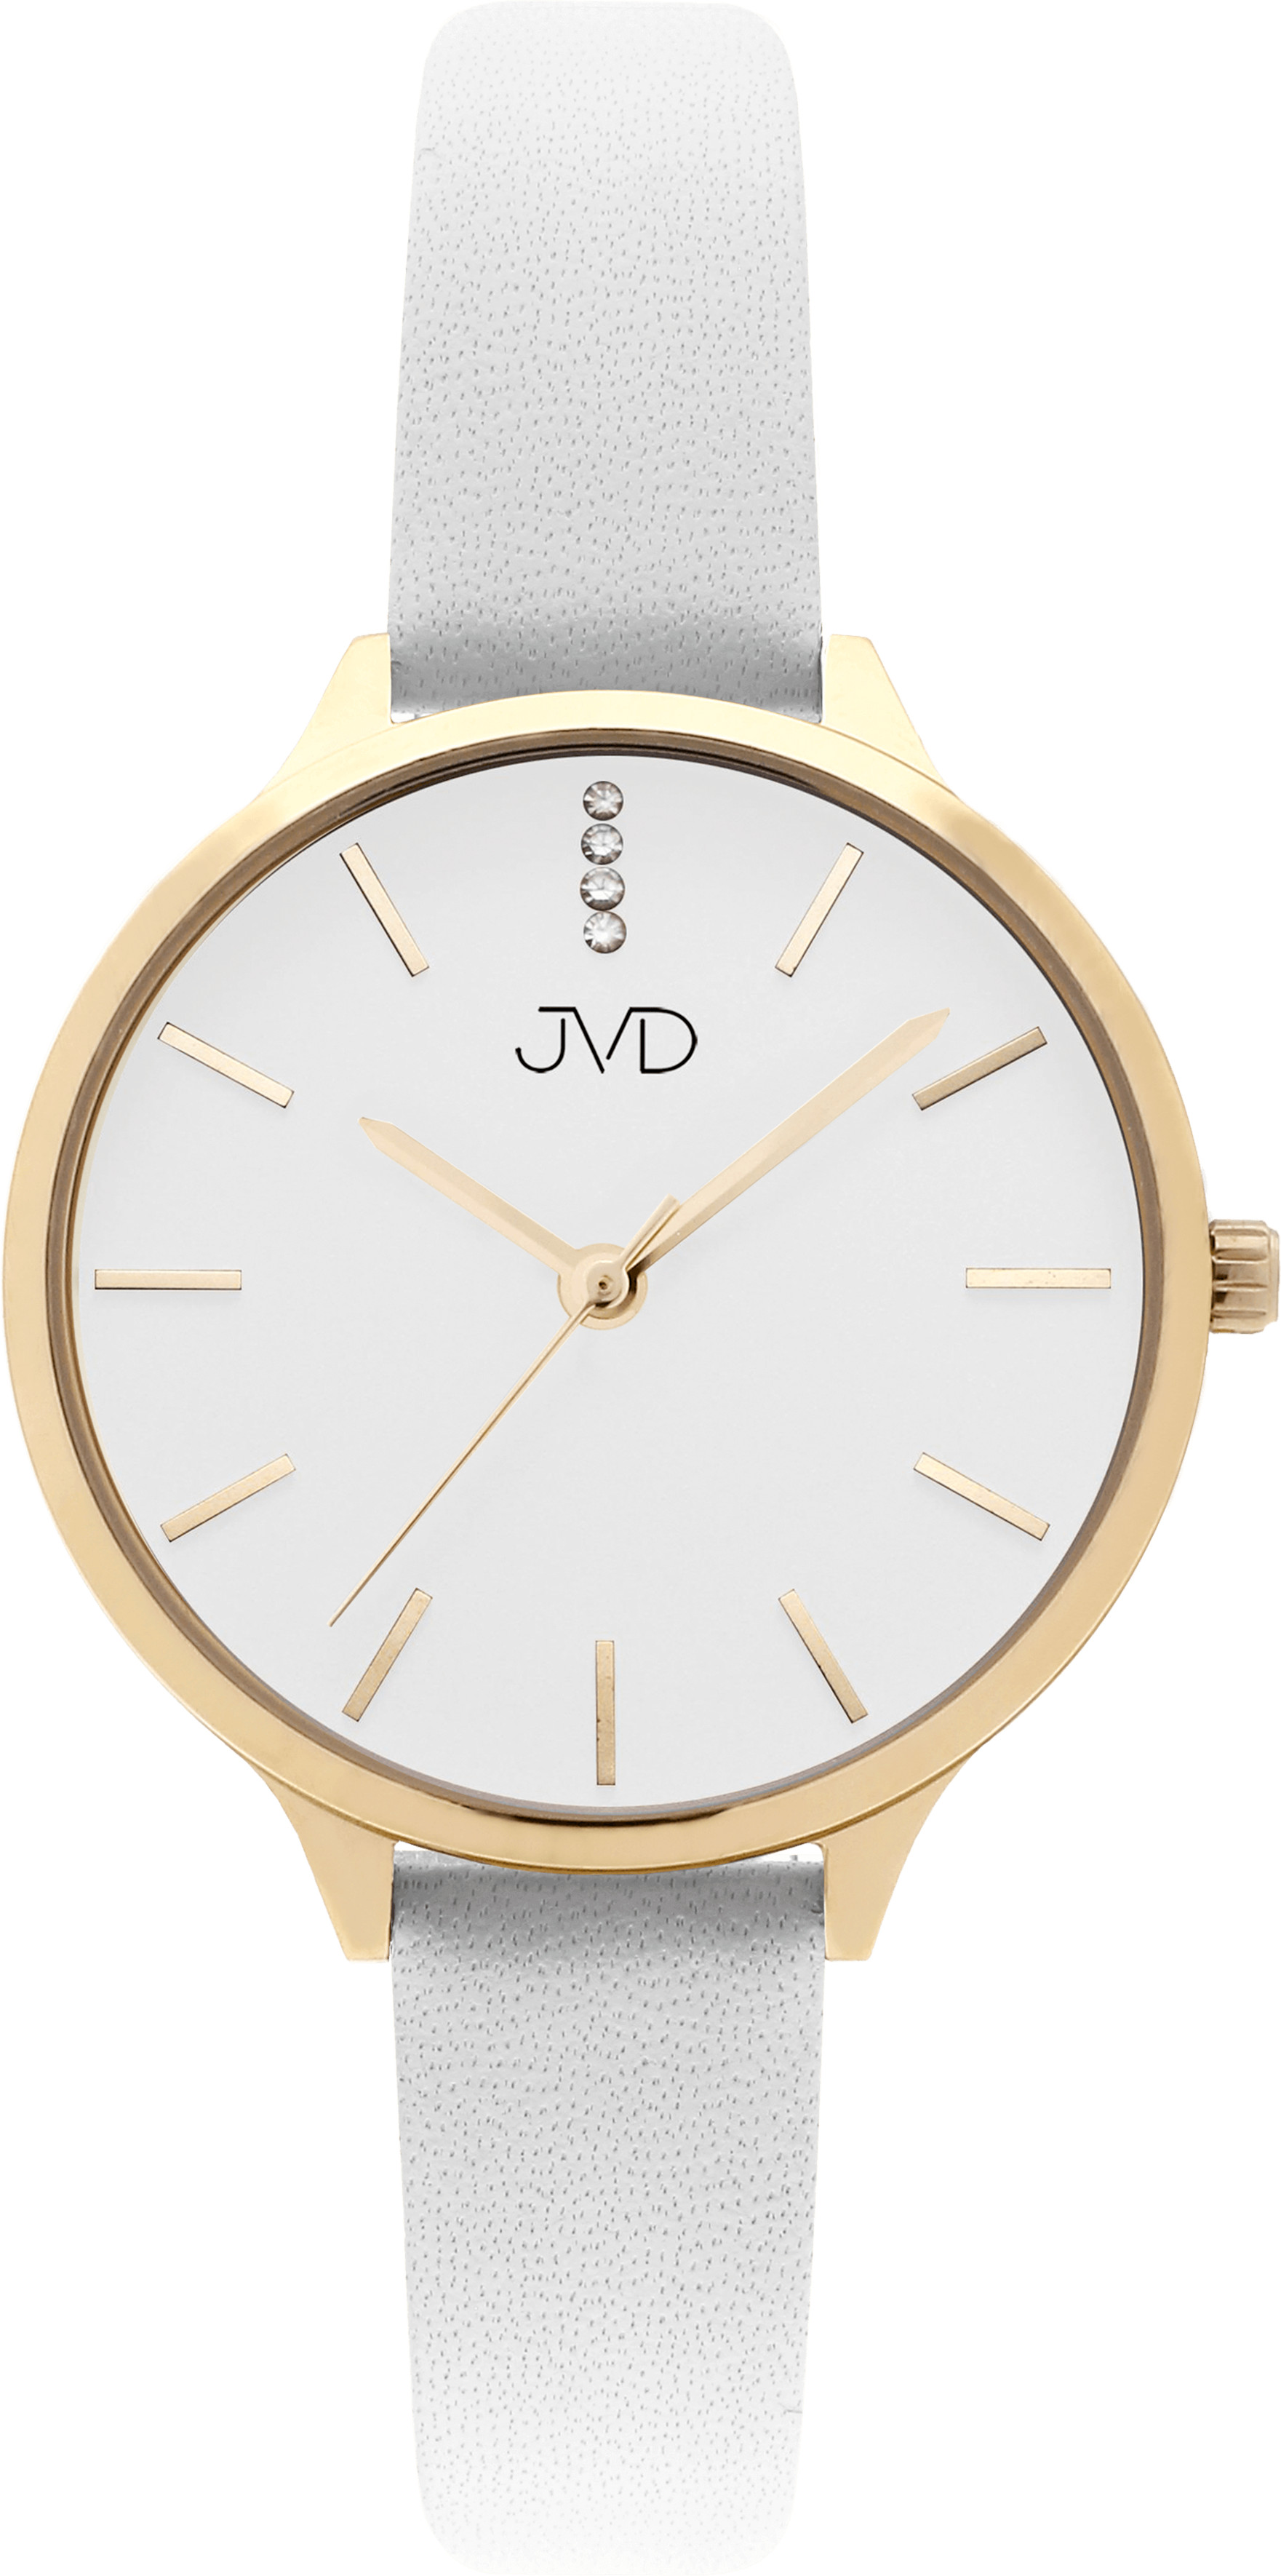 JVD Analogové hodinky JZ201.9